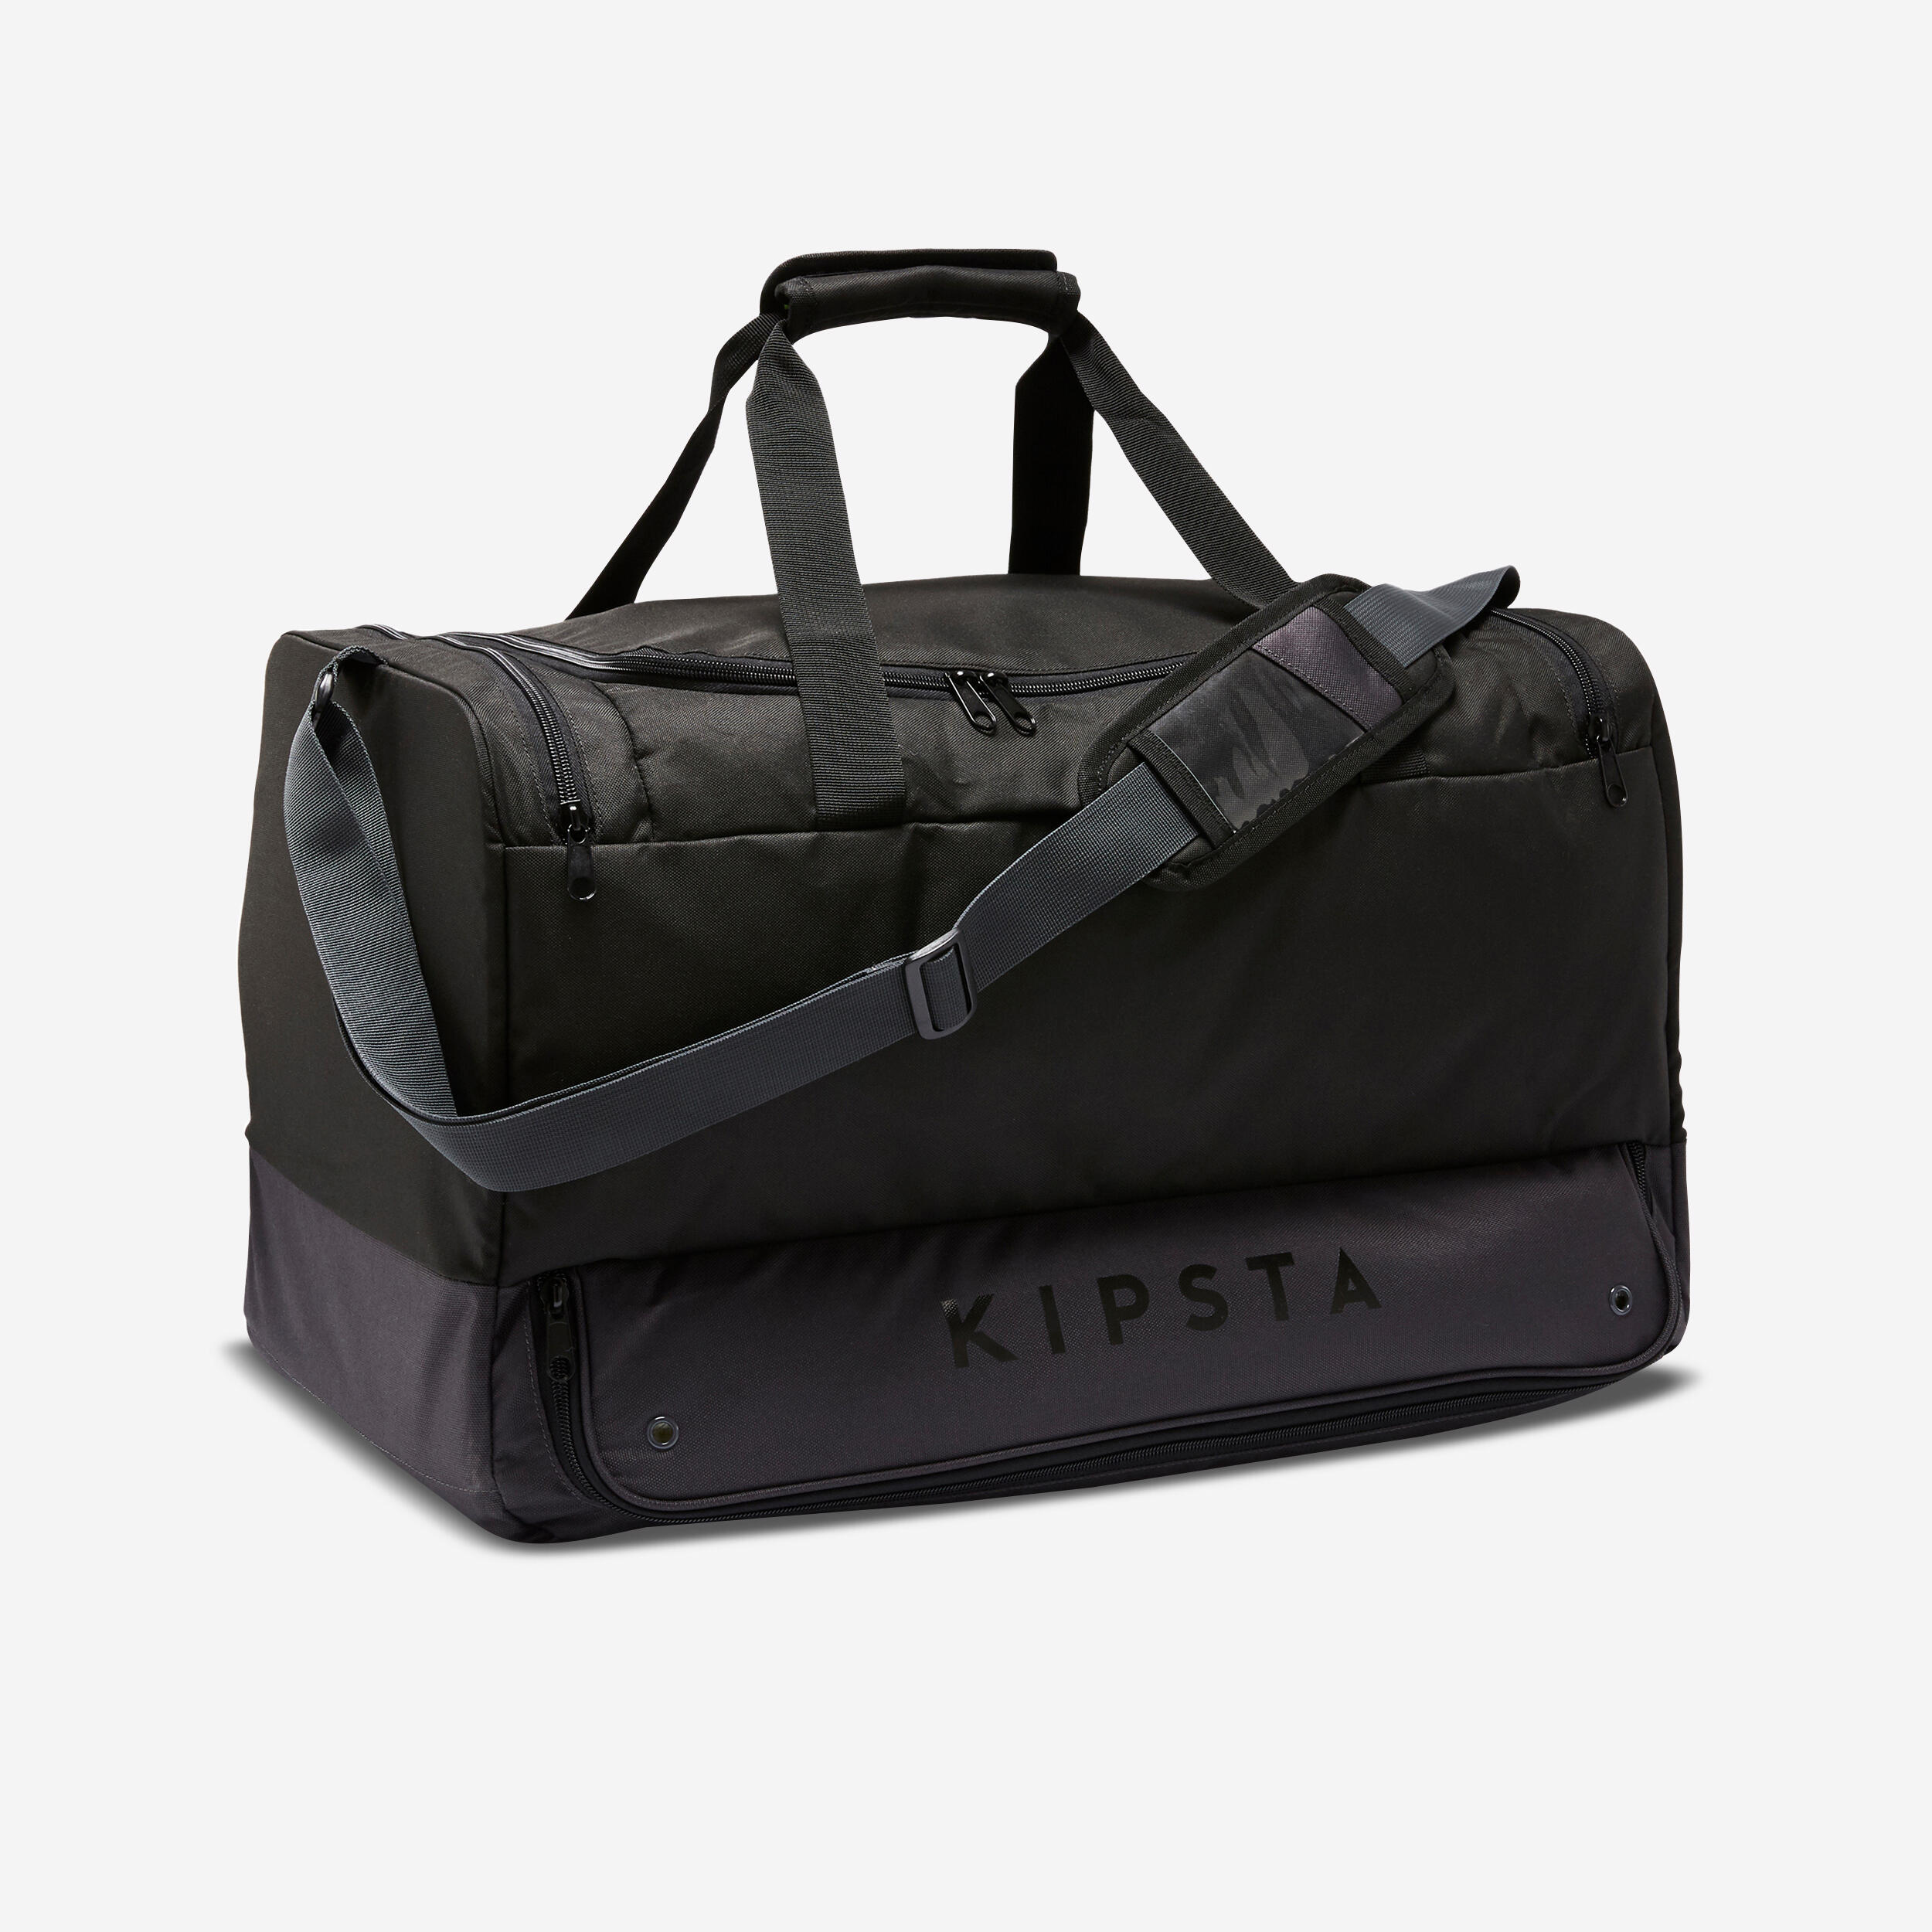 KIPSTA 75L Sports Bag Hardcase - Black